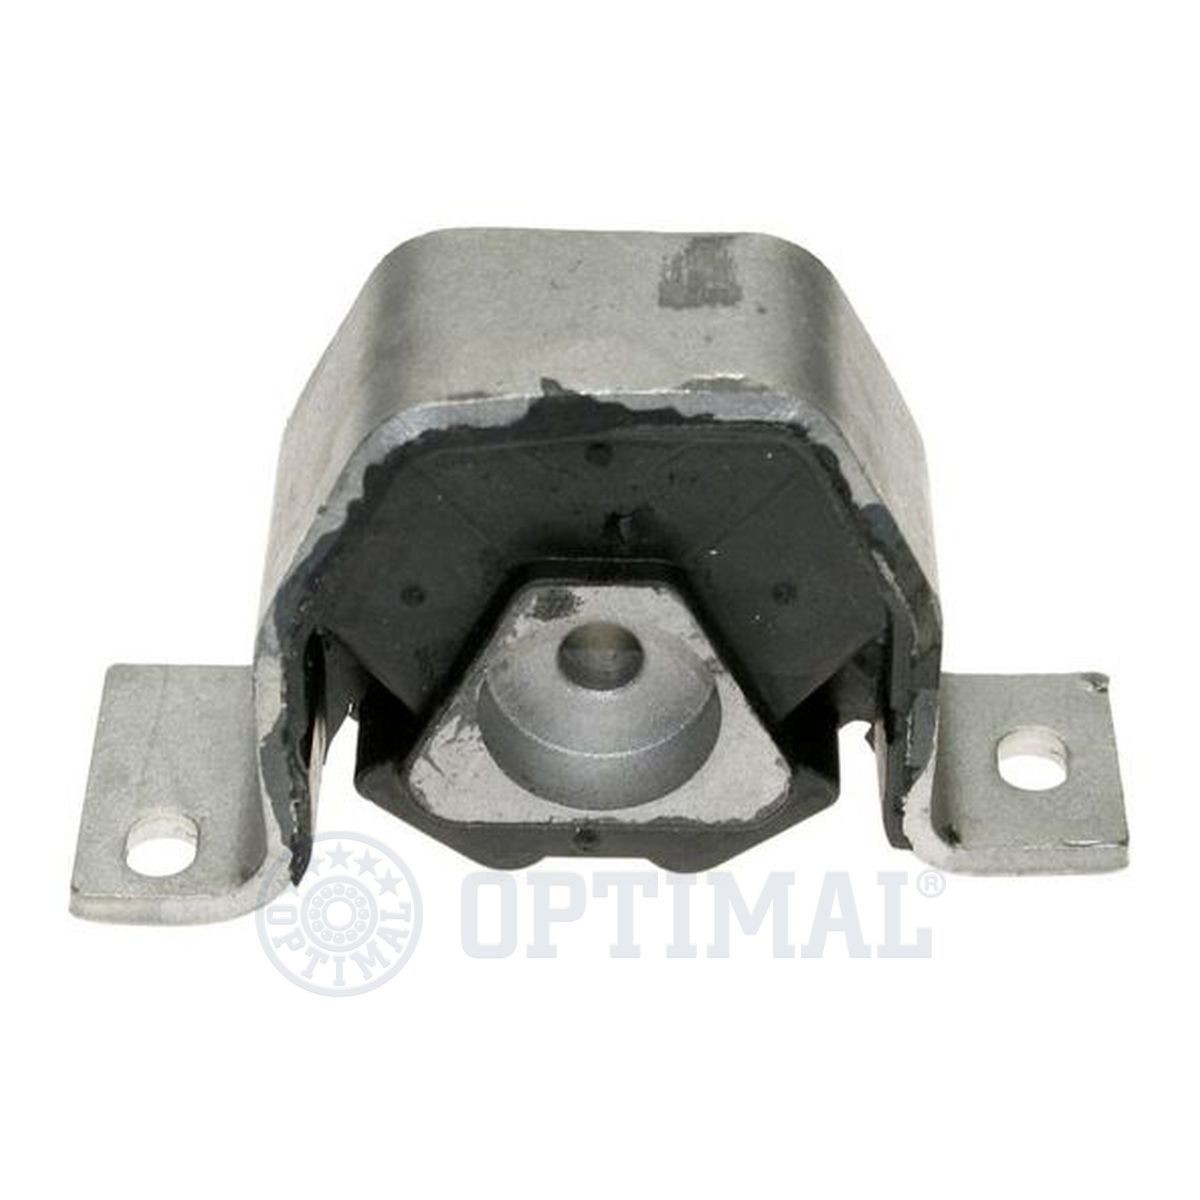 OPTIMAL Alternator Freewheel Clutch F5-1101 buy